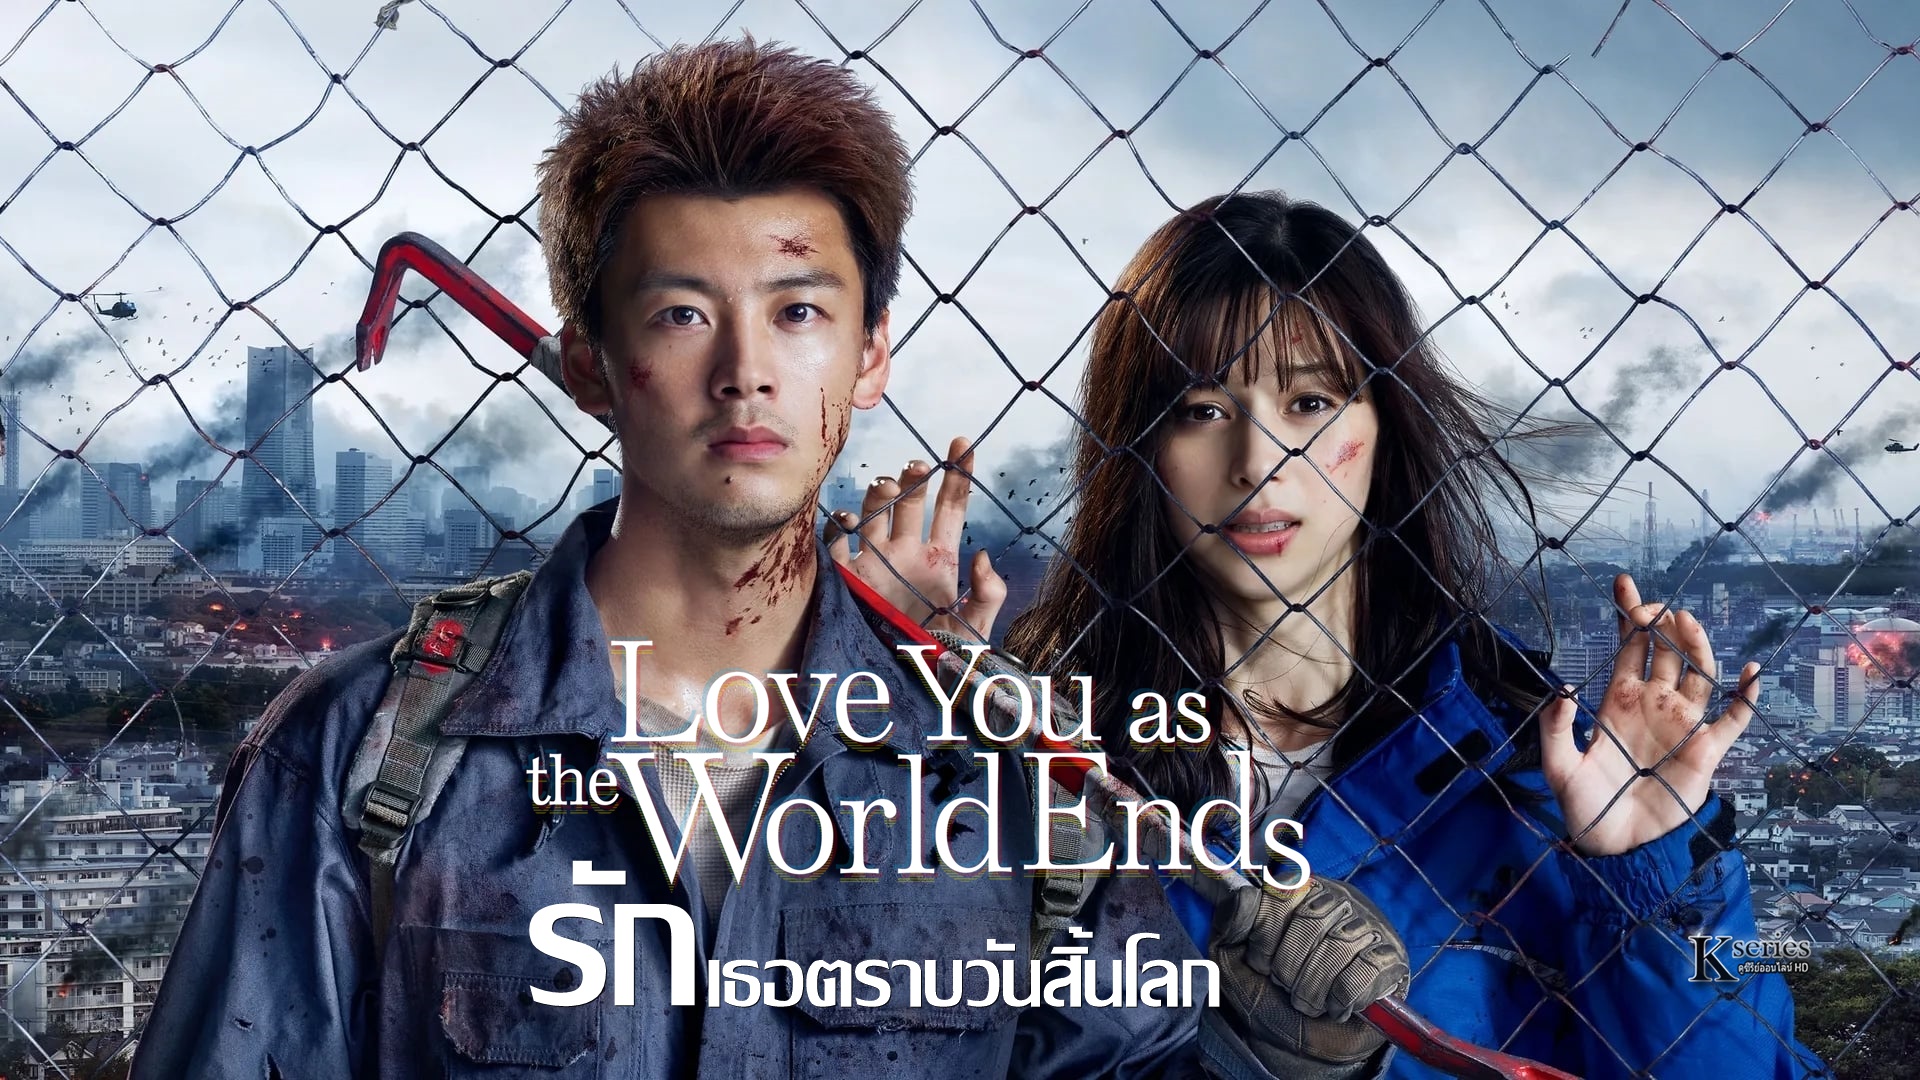 ดูซีรี่ย์ญี่ปุ่น Love You as the World Ends (2021) รักเธอตราบวันสิ้นโลก ซับไทย